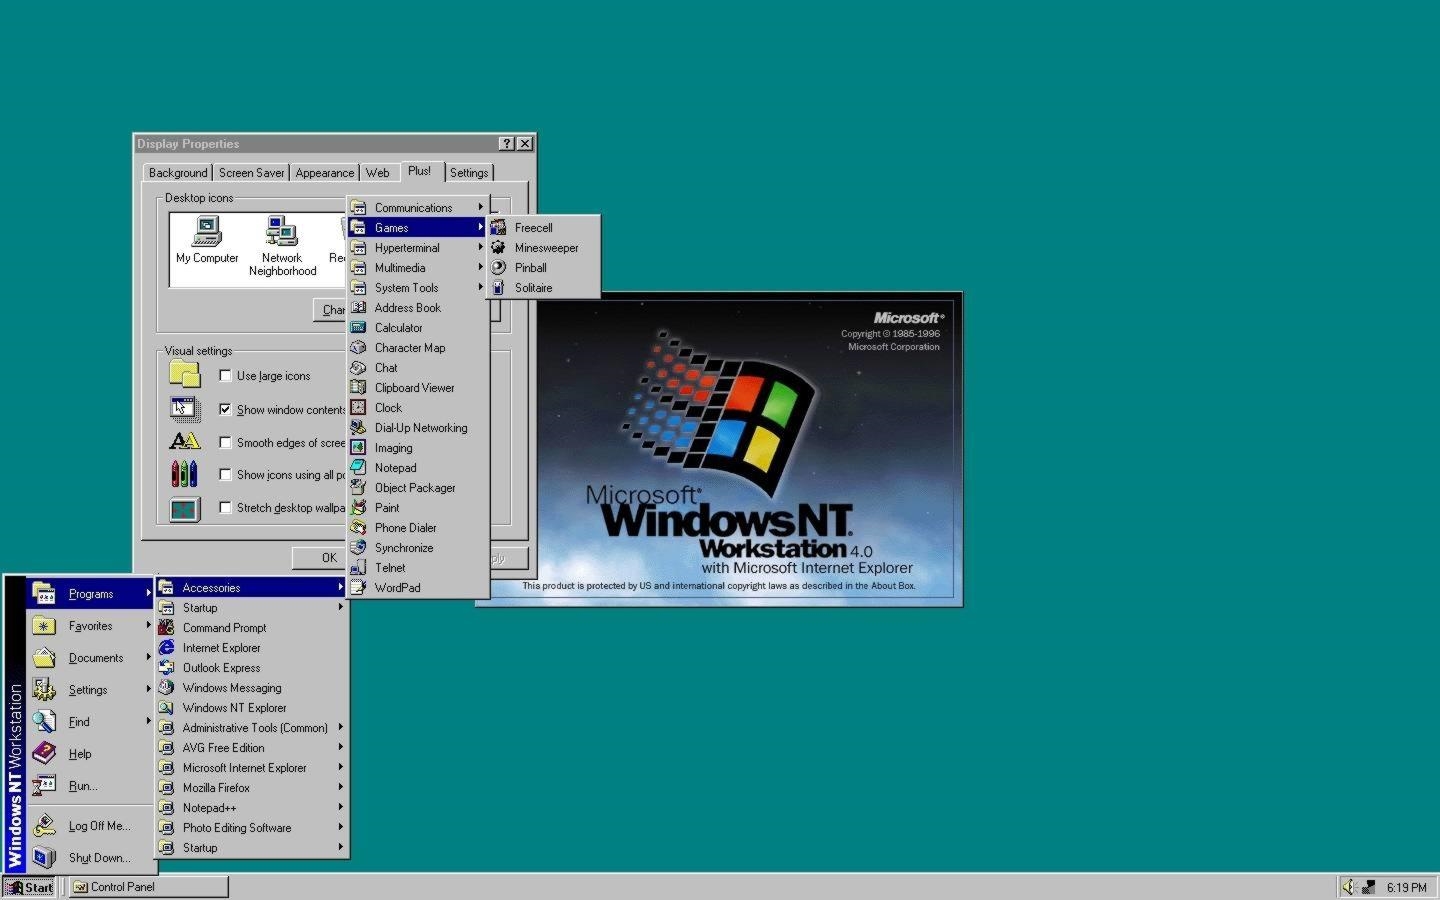 Windows NT 4.0: La tecnología NT adaptada a la interfaz de Windows 95 y con mejoras de redes